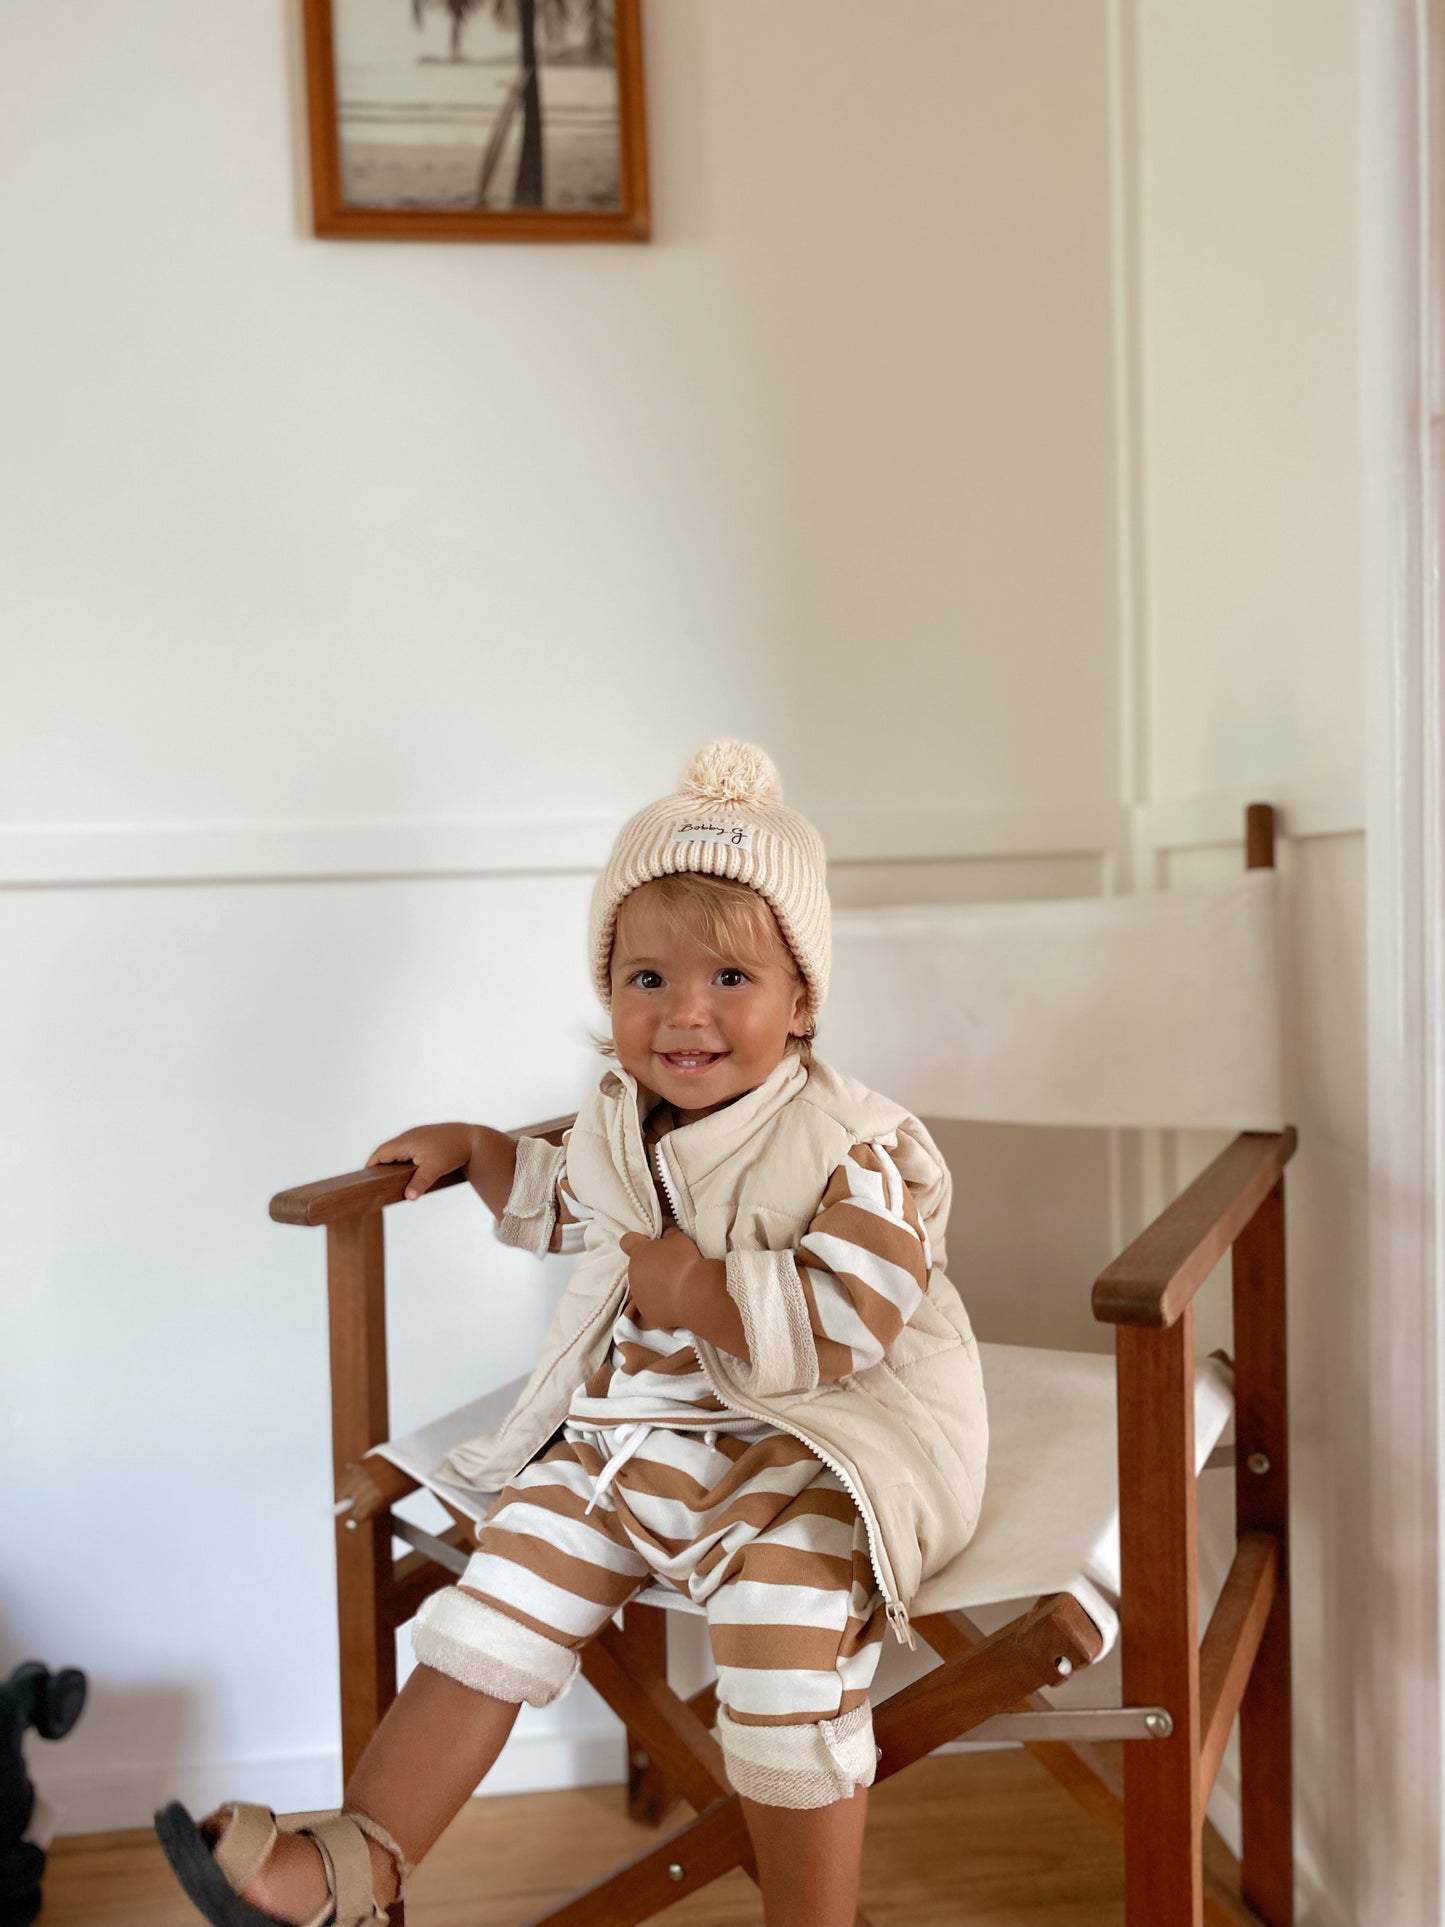 Ari Puffer vest - Eggshell | Bobby G Baby Wear